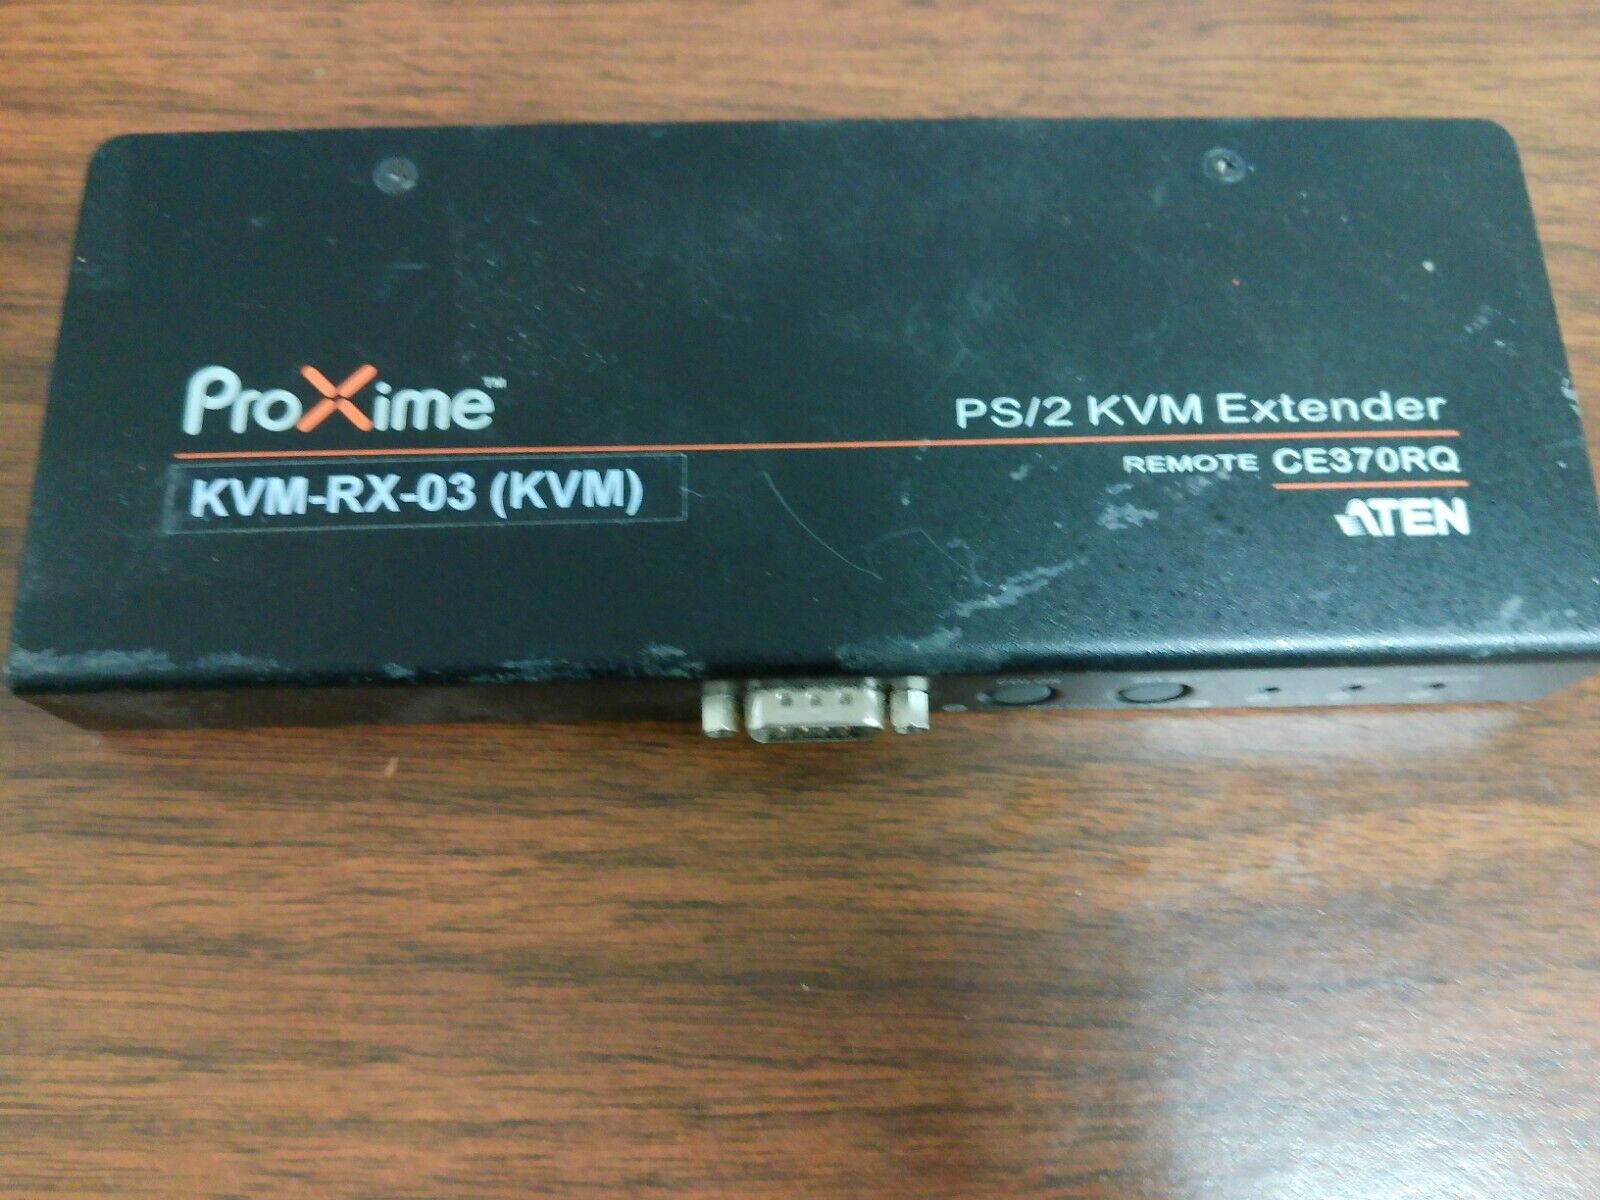 ATEN PROXIME  CE370RQ PS/2 KVM Extender REMOTE